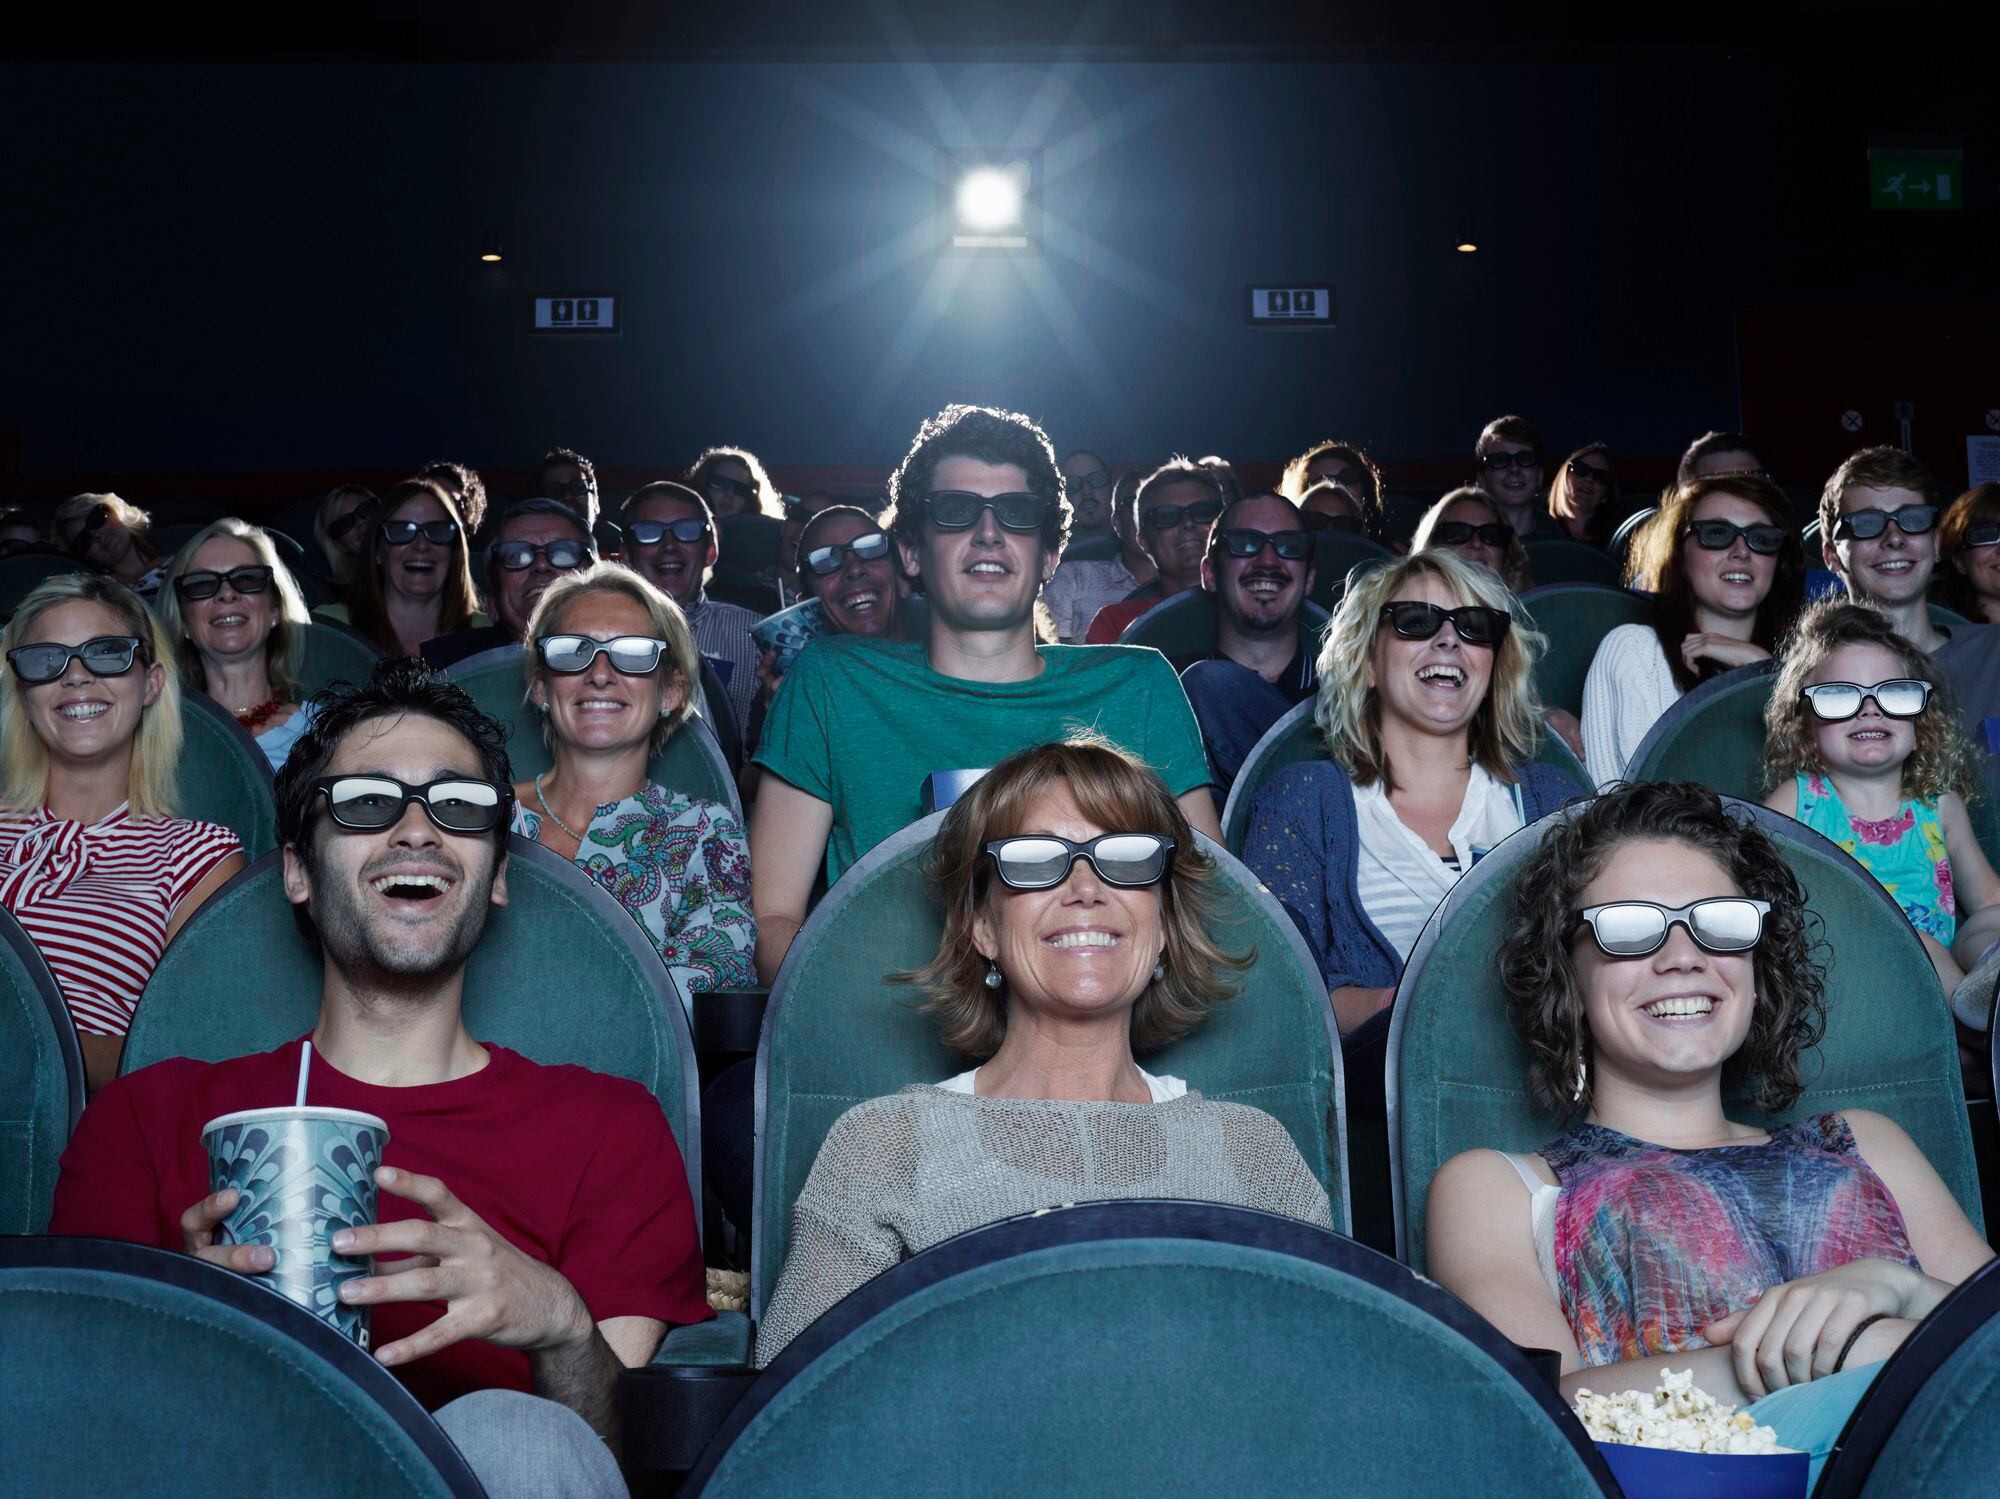 incrementan cifras de asistencia a salas de cine en colombia: proimágenes